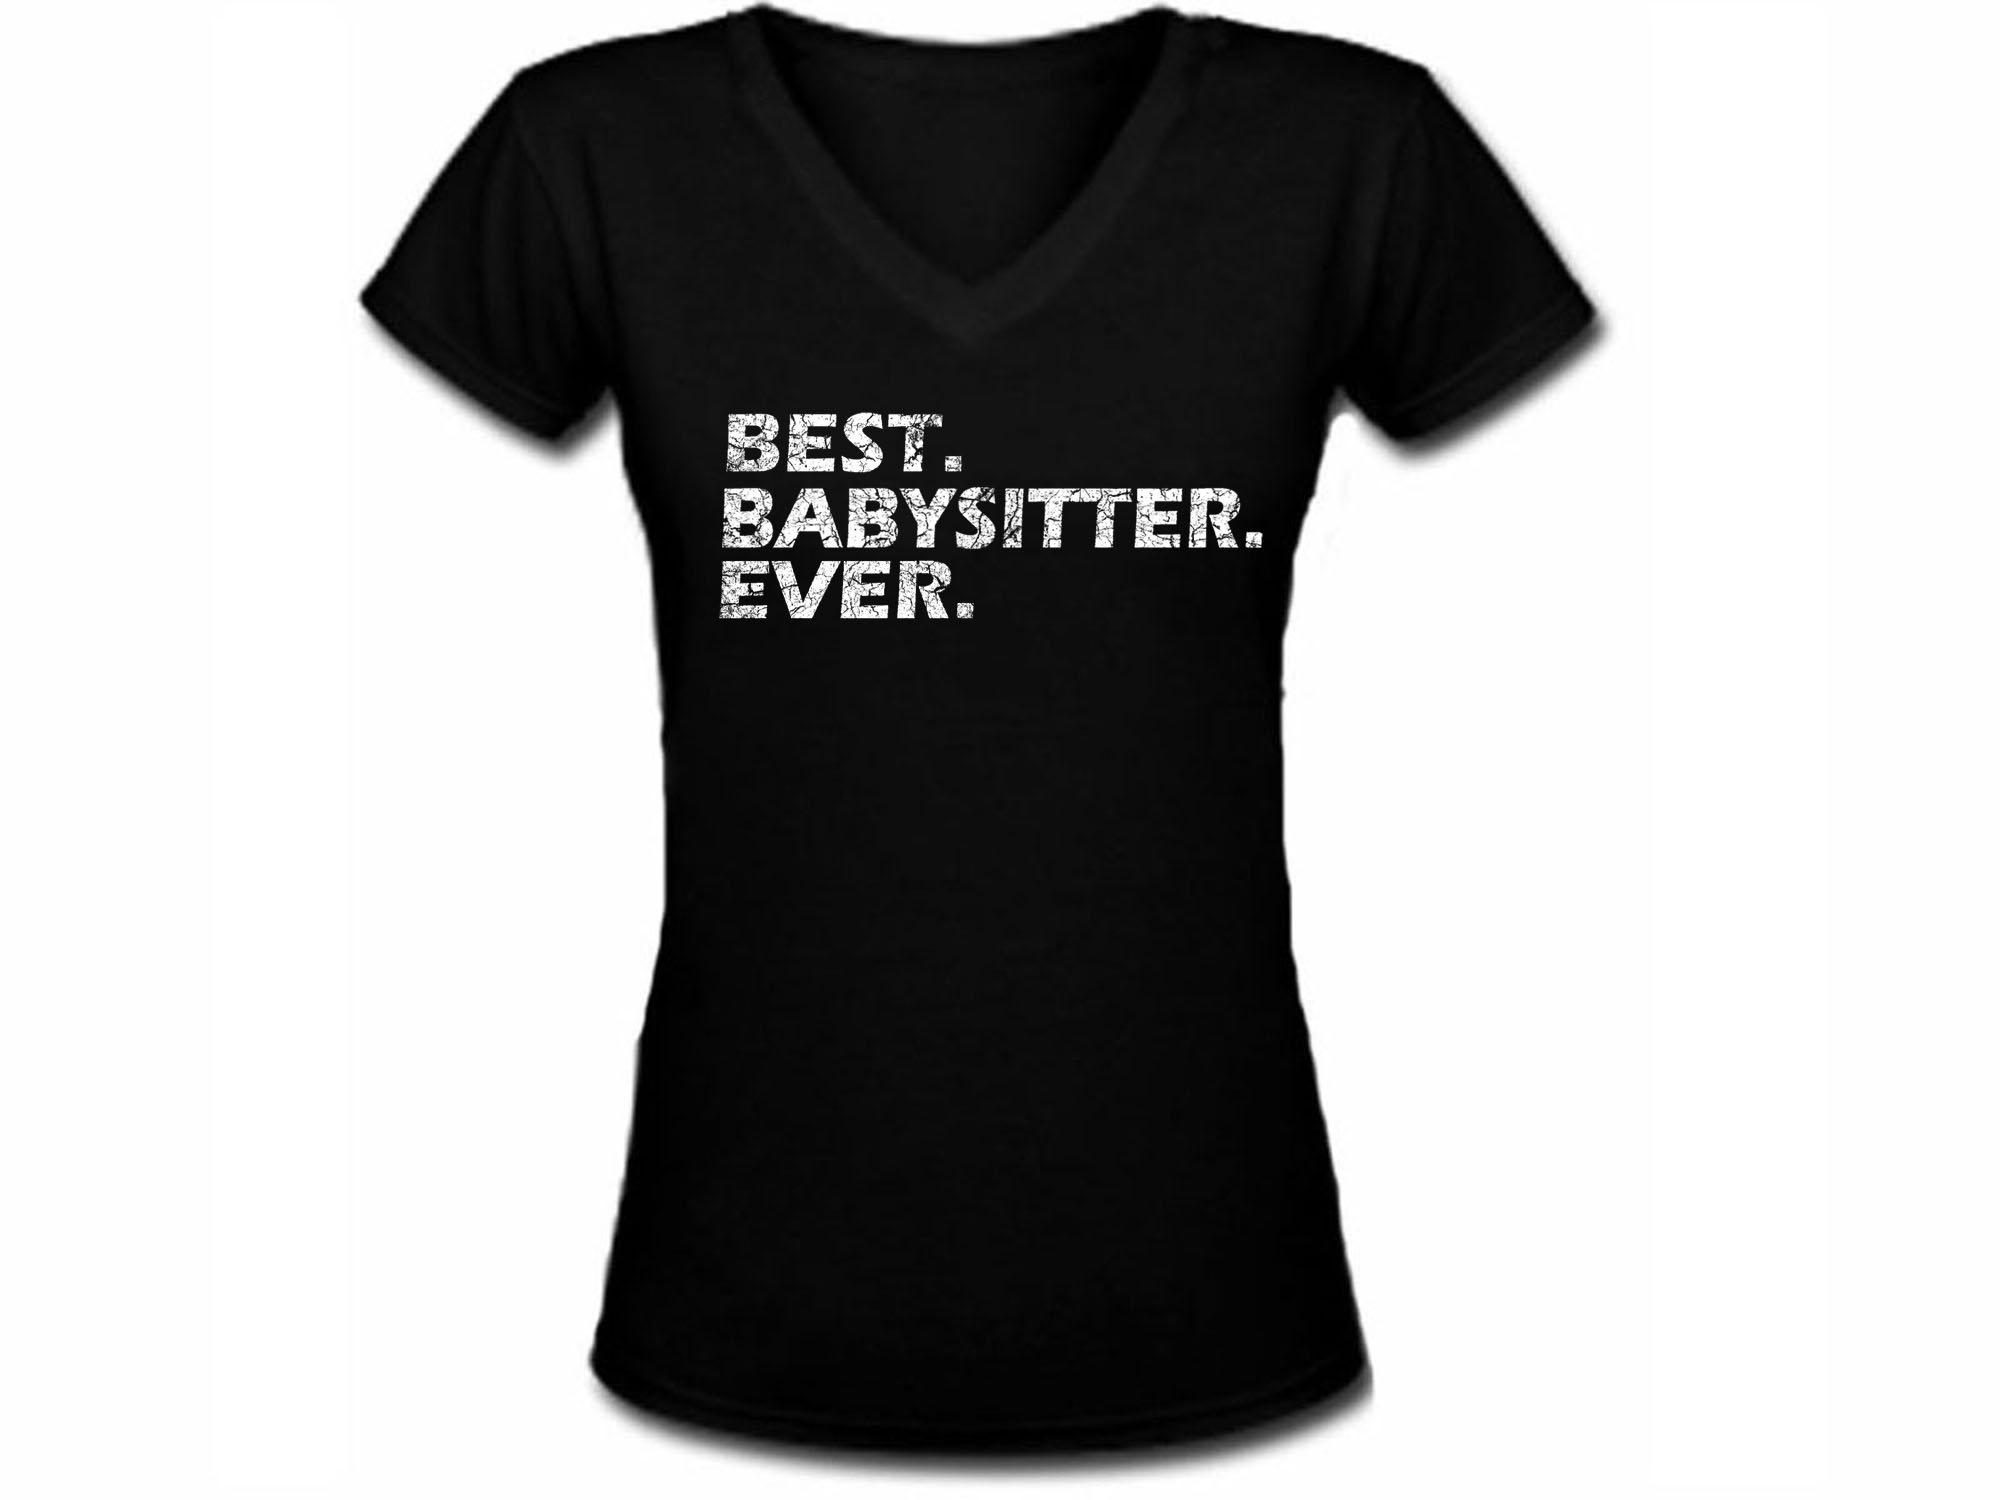 Best babysitter ever women or junior v neck black t-shirt